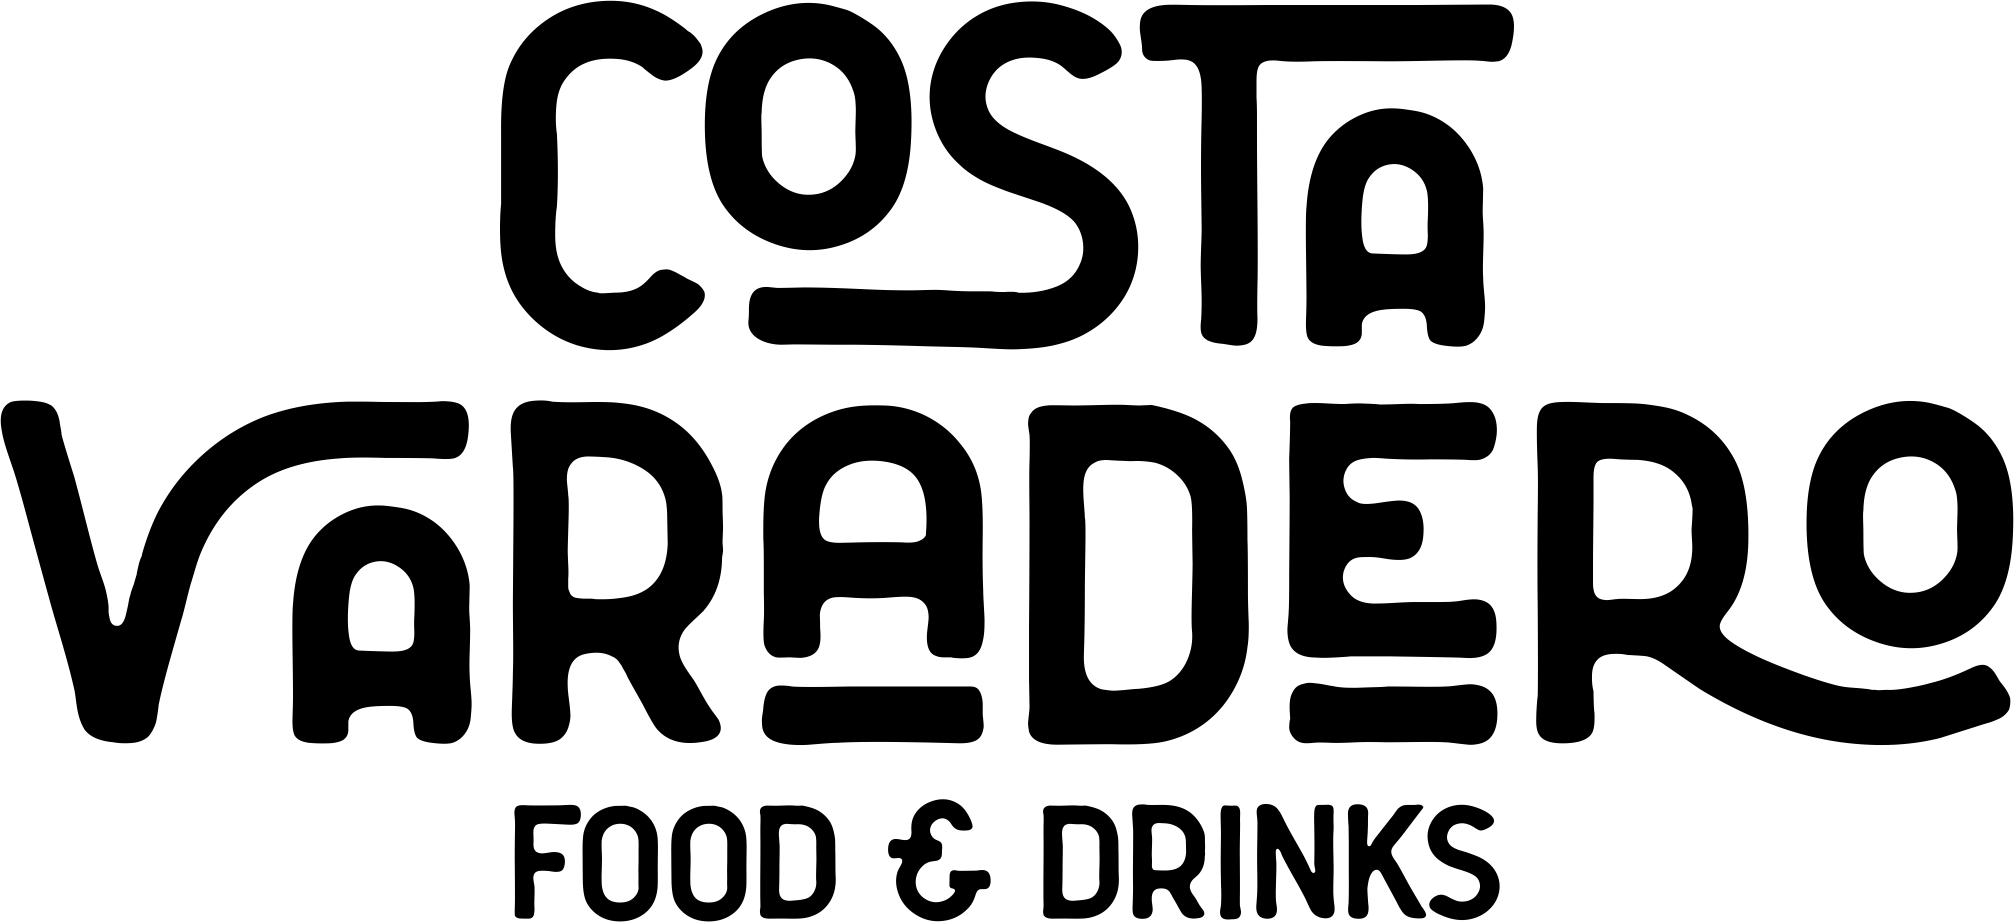 Logo-Costa-Varadero-FD-2